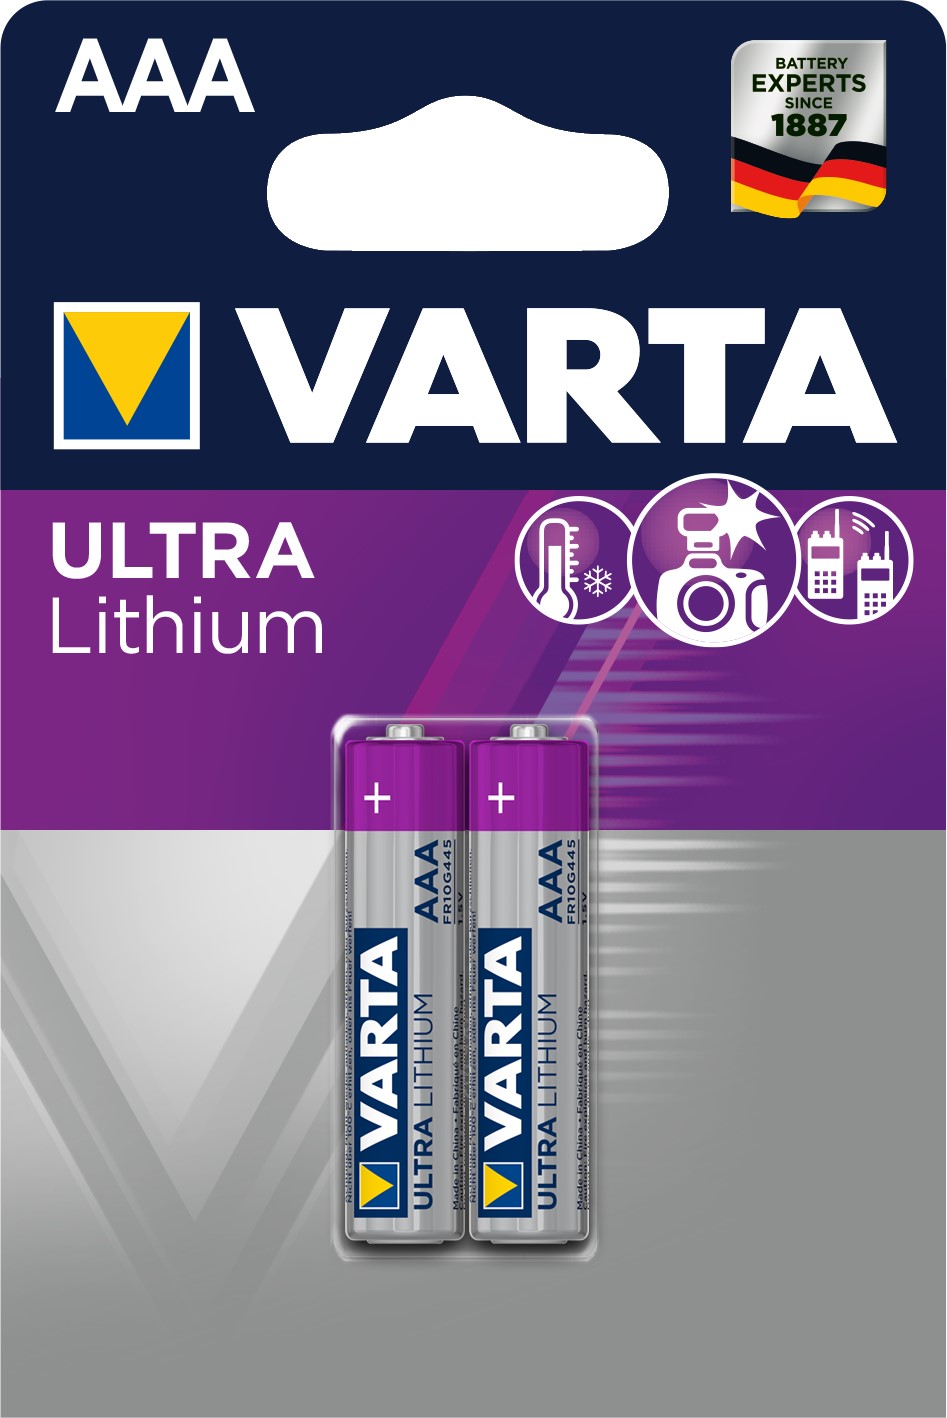 VARTA AAA x2 Pile lithium 1,5V VARTA